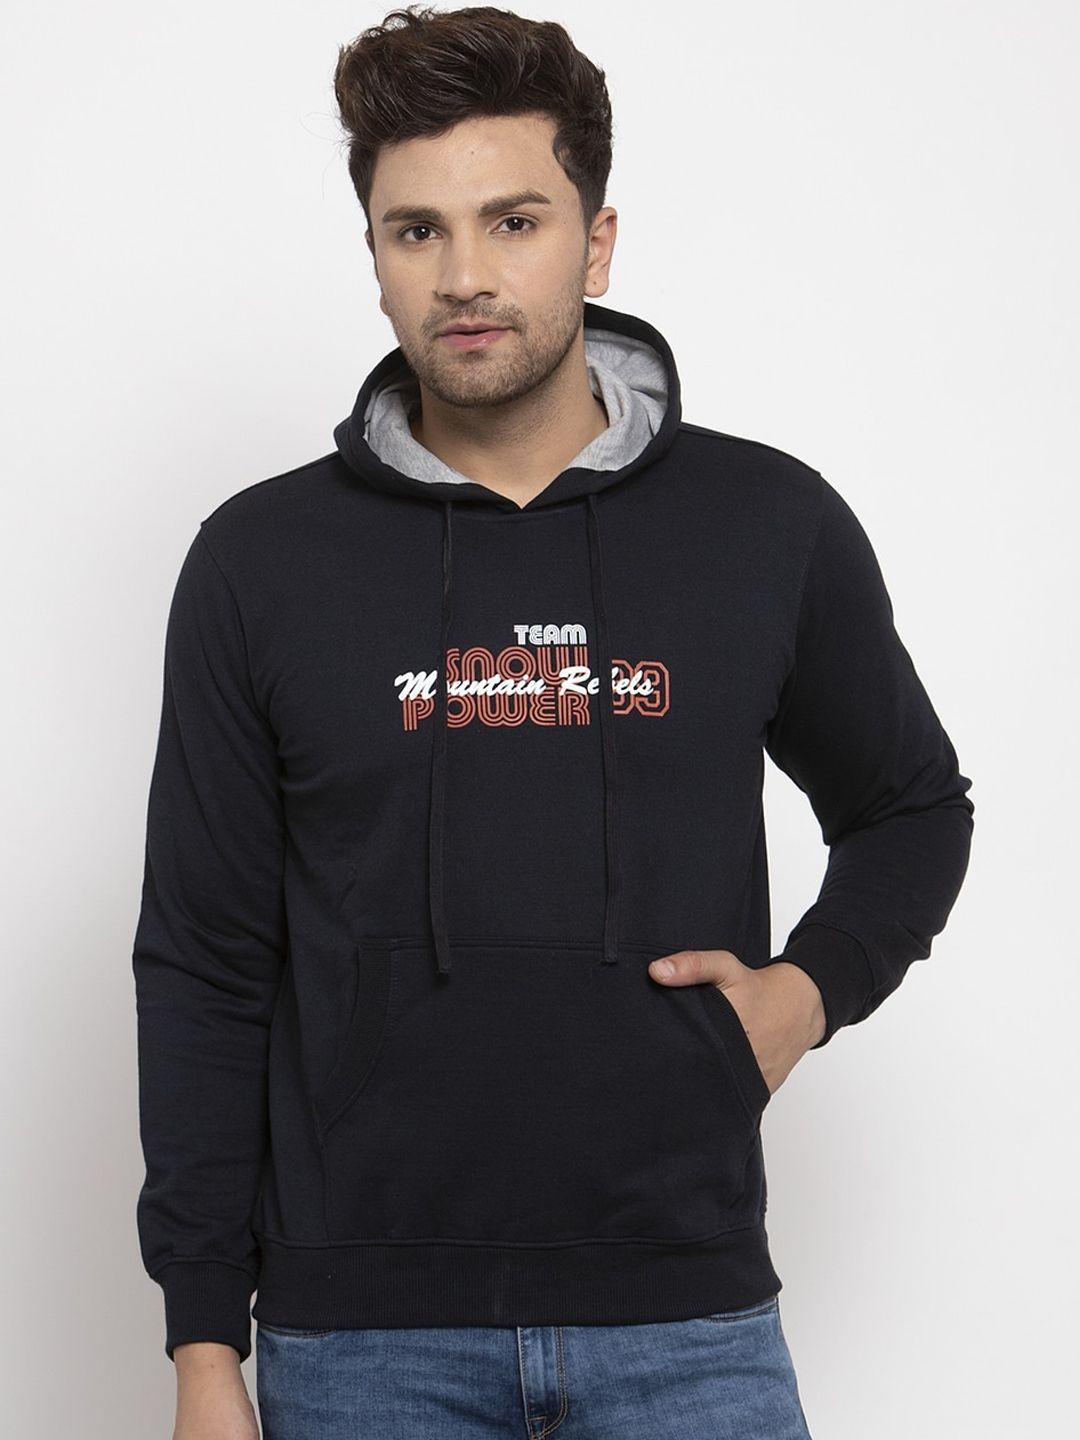 cantabil-men-black-printed-hooded-sweatshirt